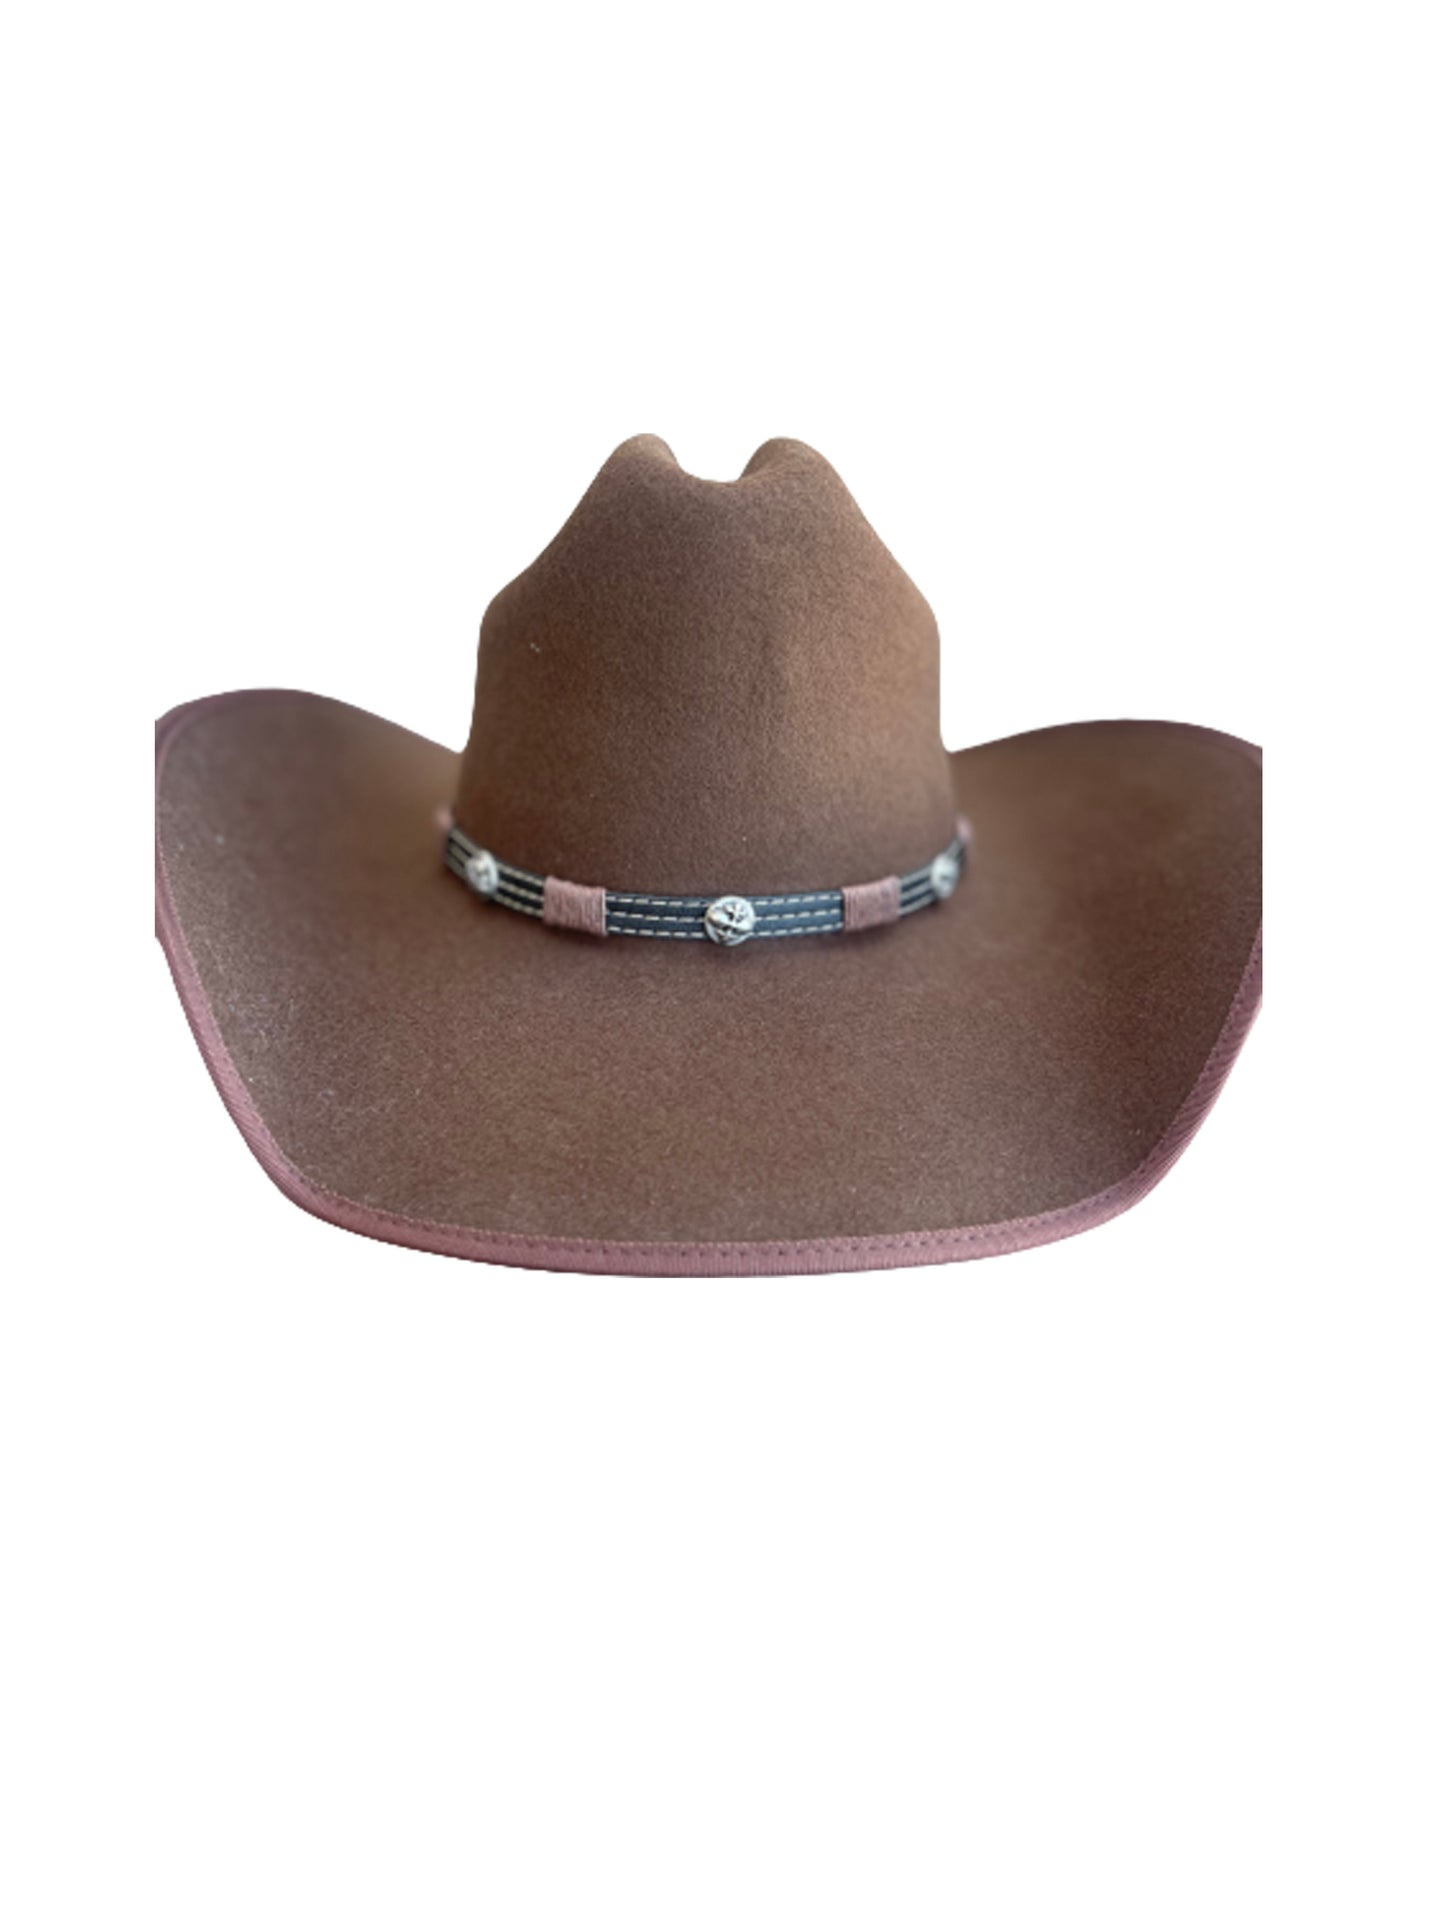 wool cowboy hat brown